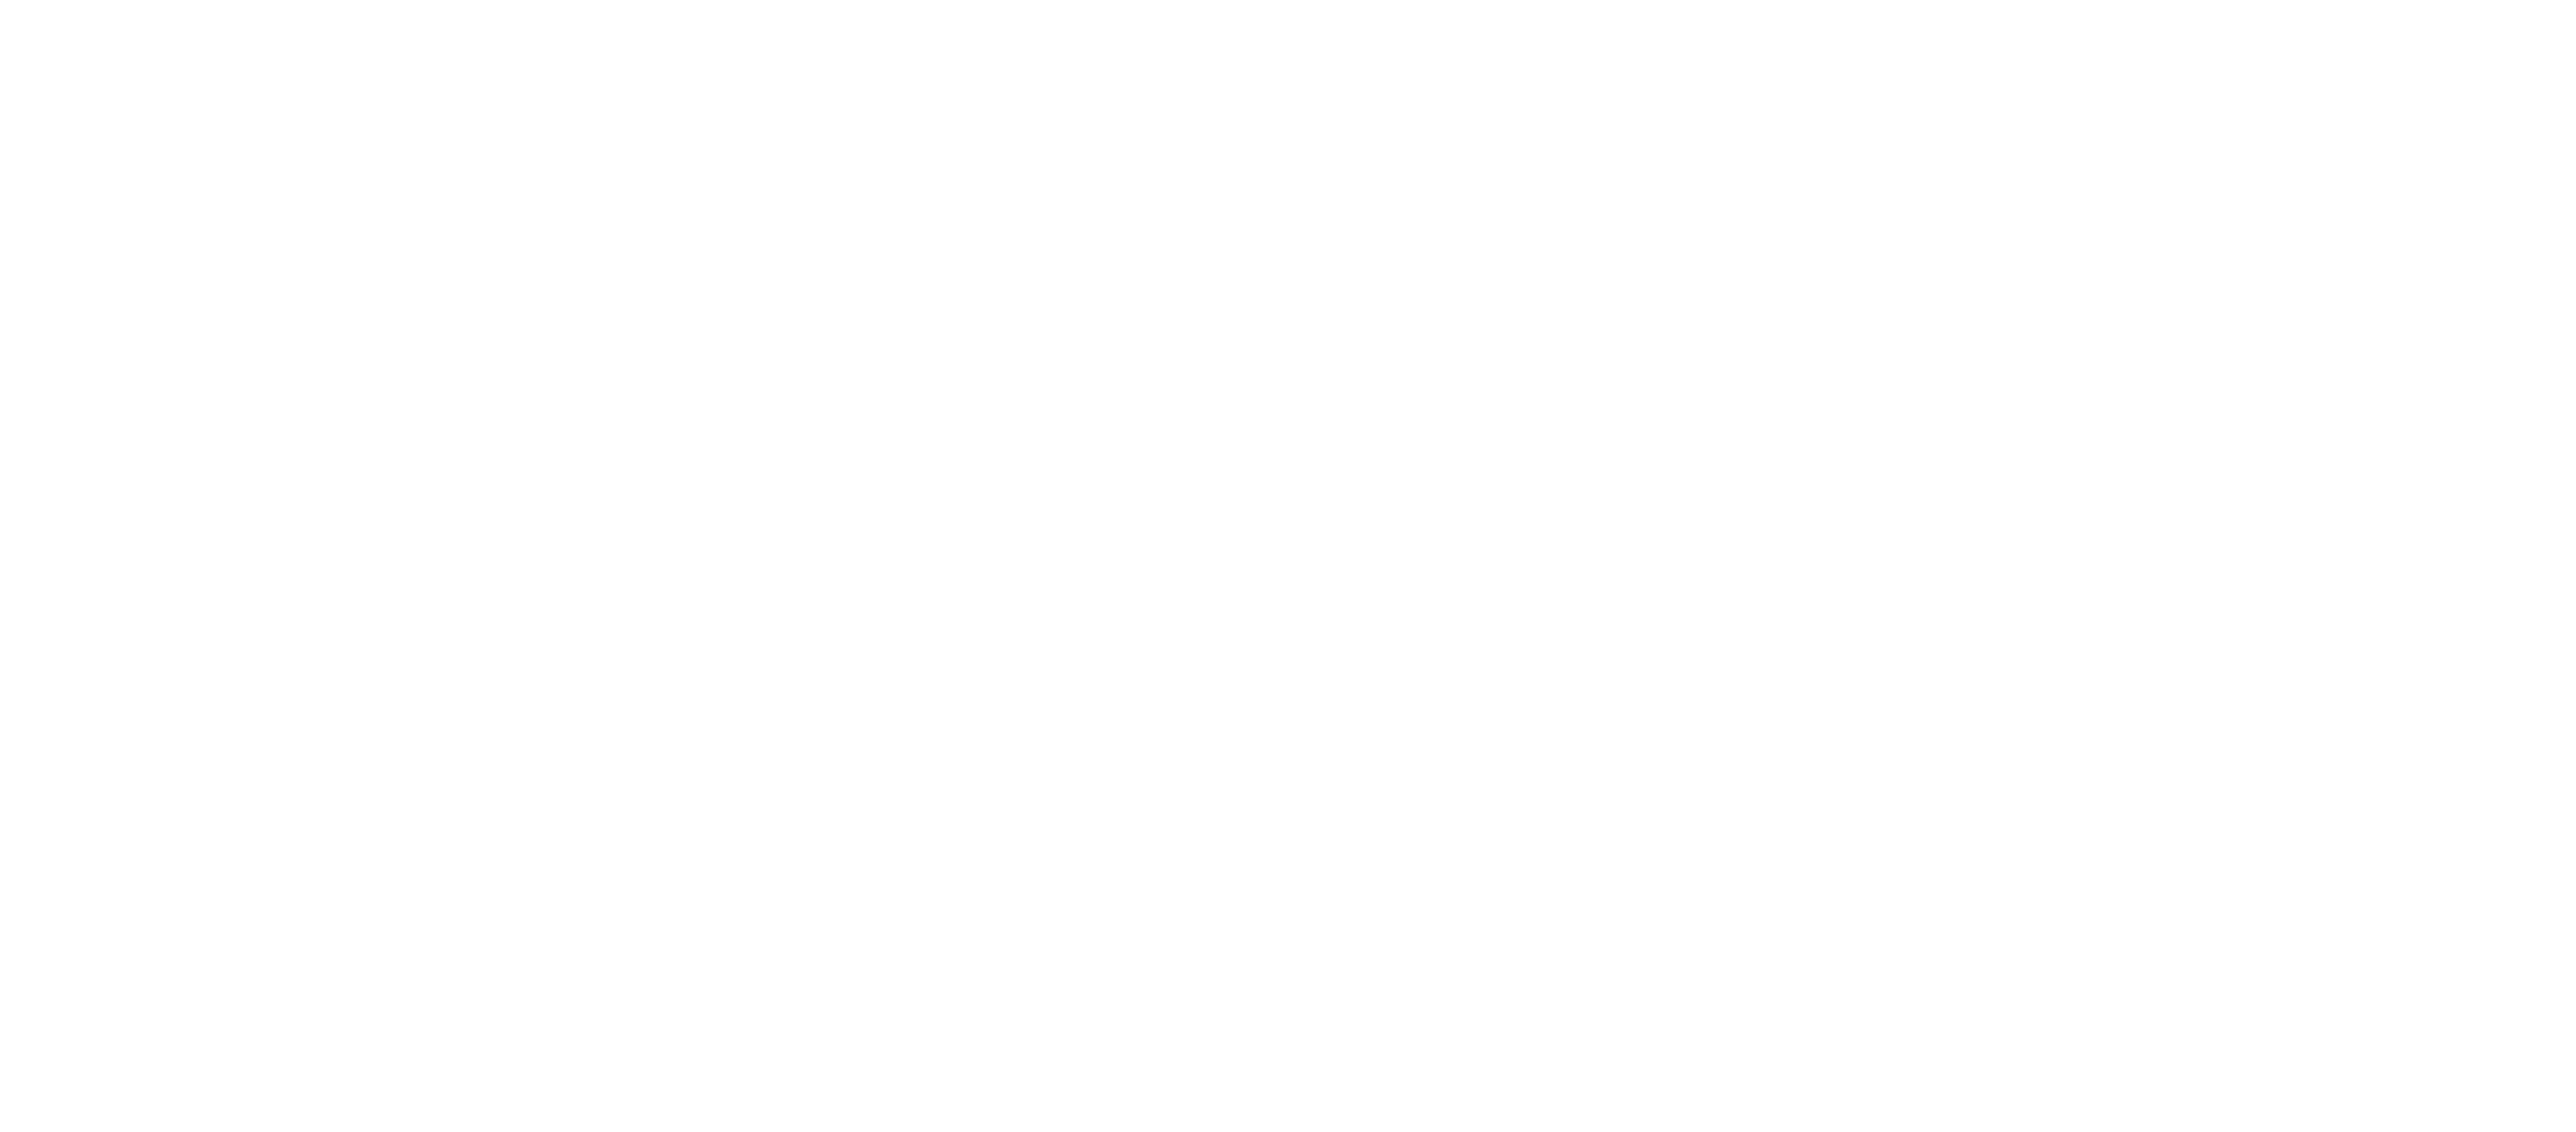 Orchestre symphonique de Gatineau